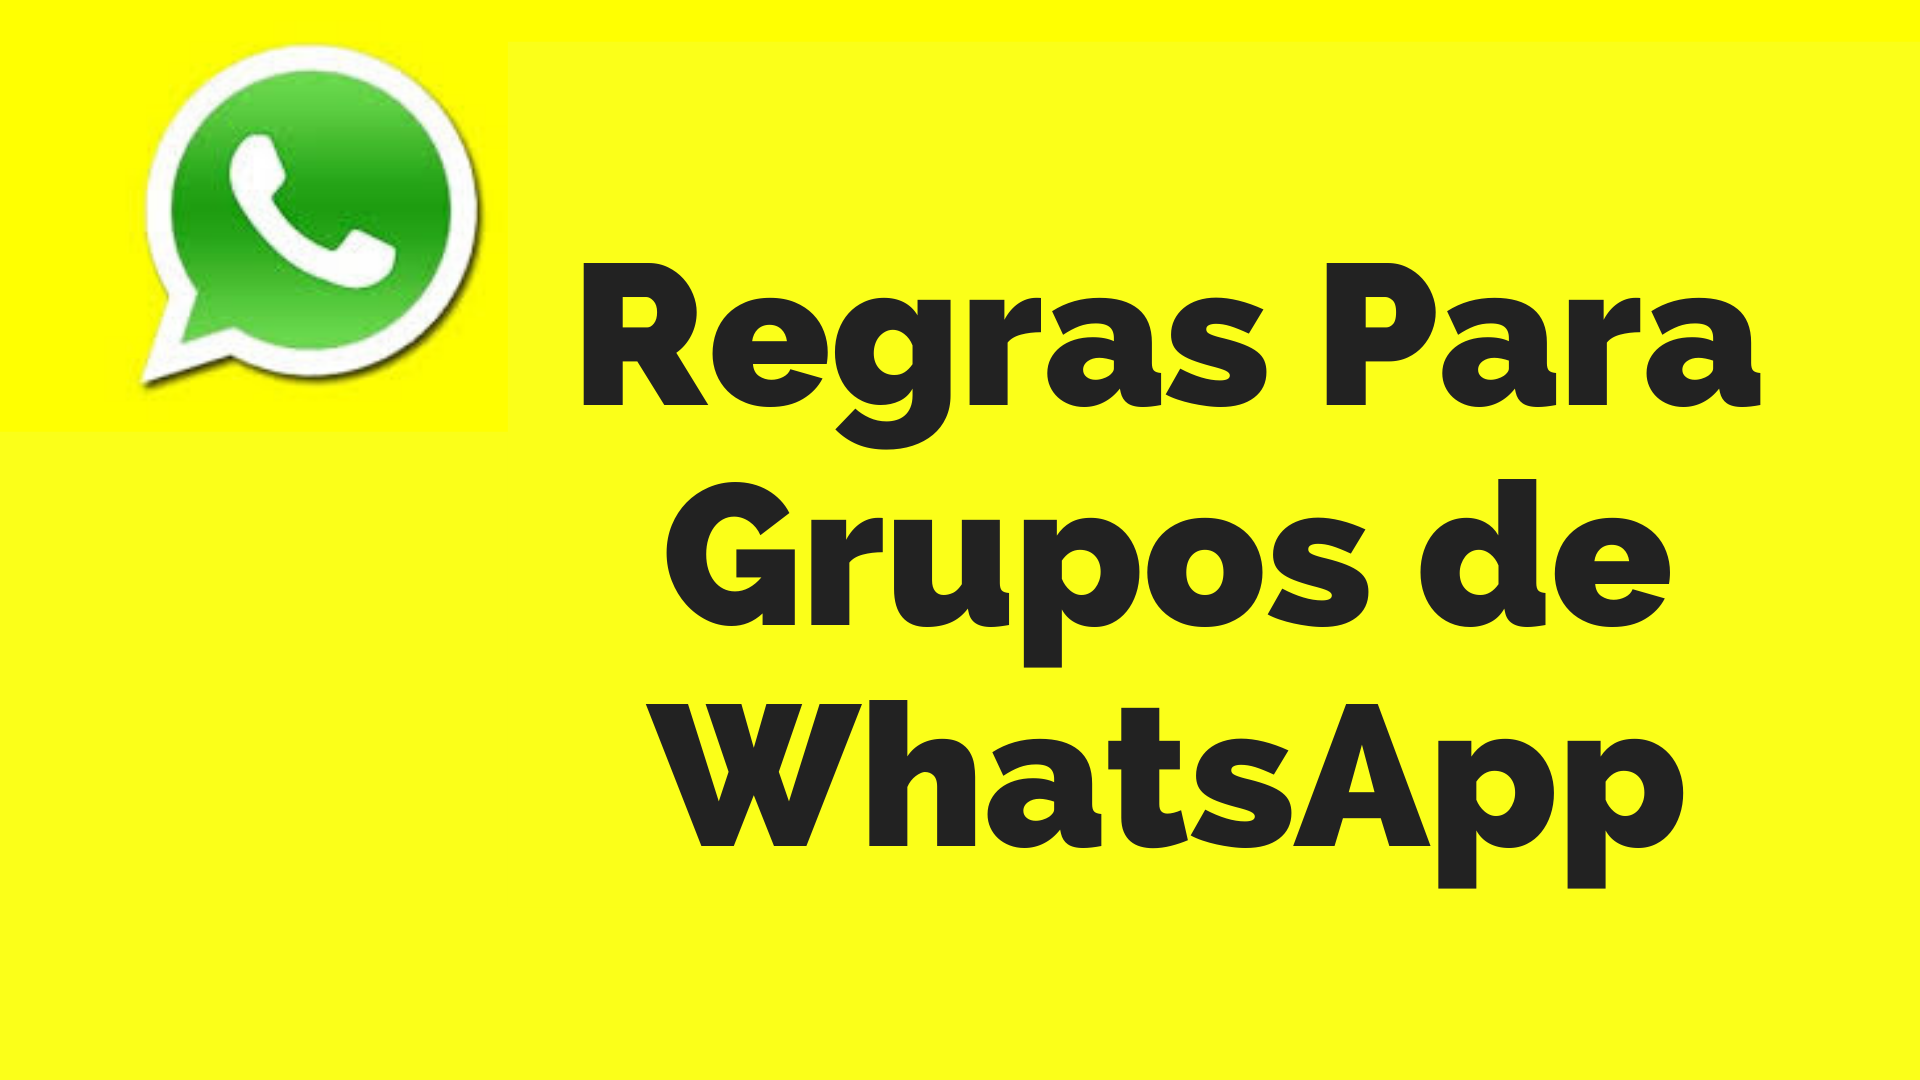 Regras de grupo de Whatsapp - Smart Planilhas